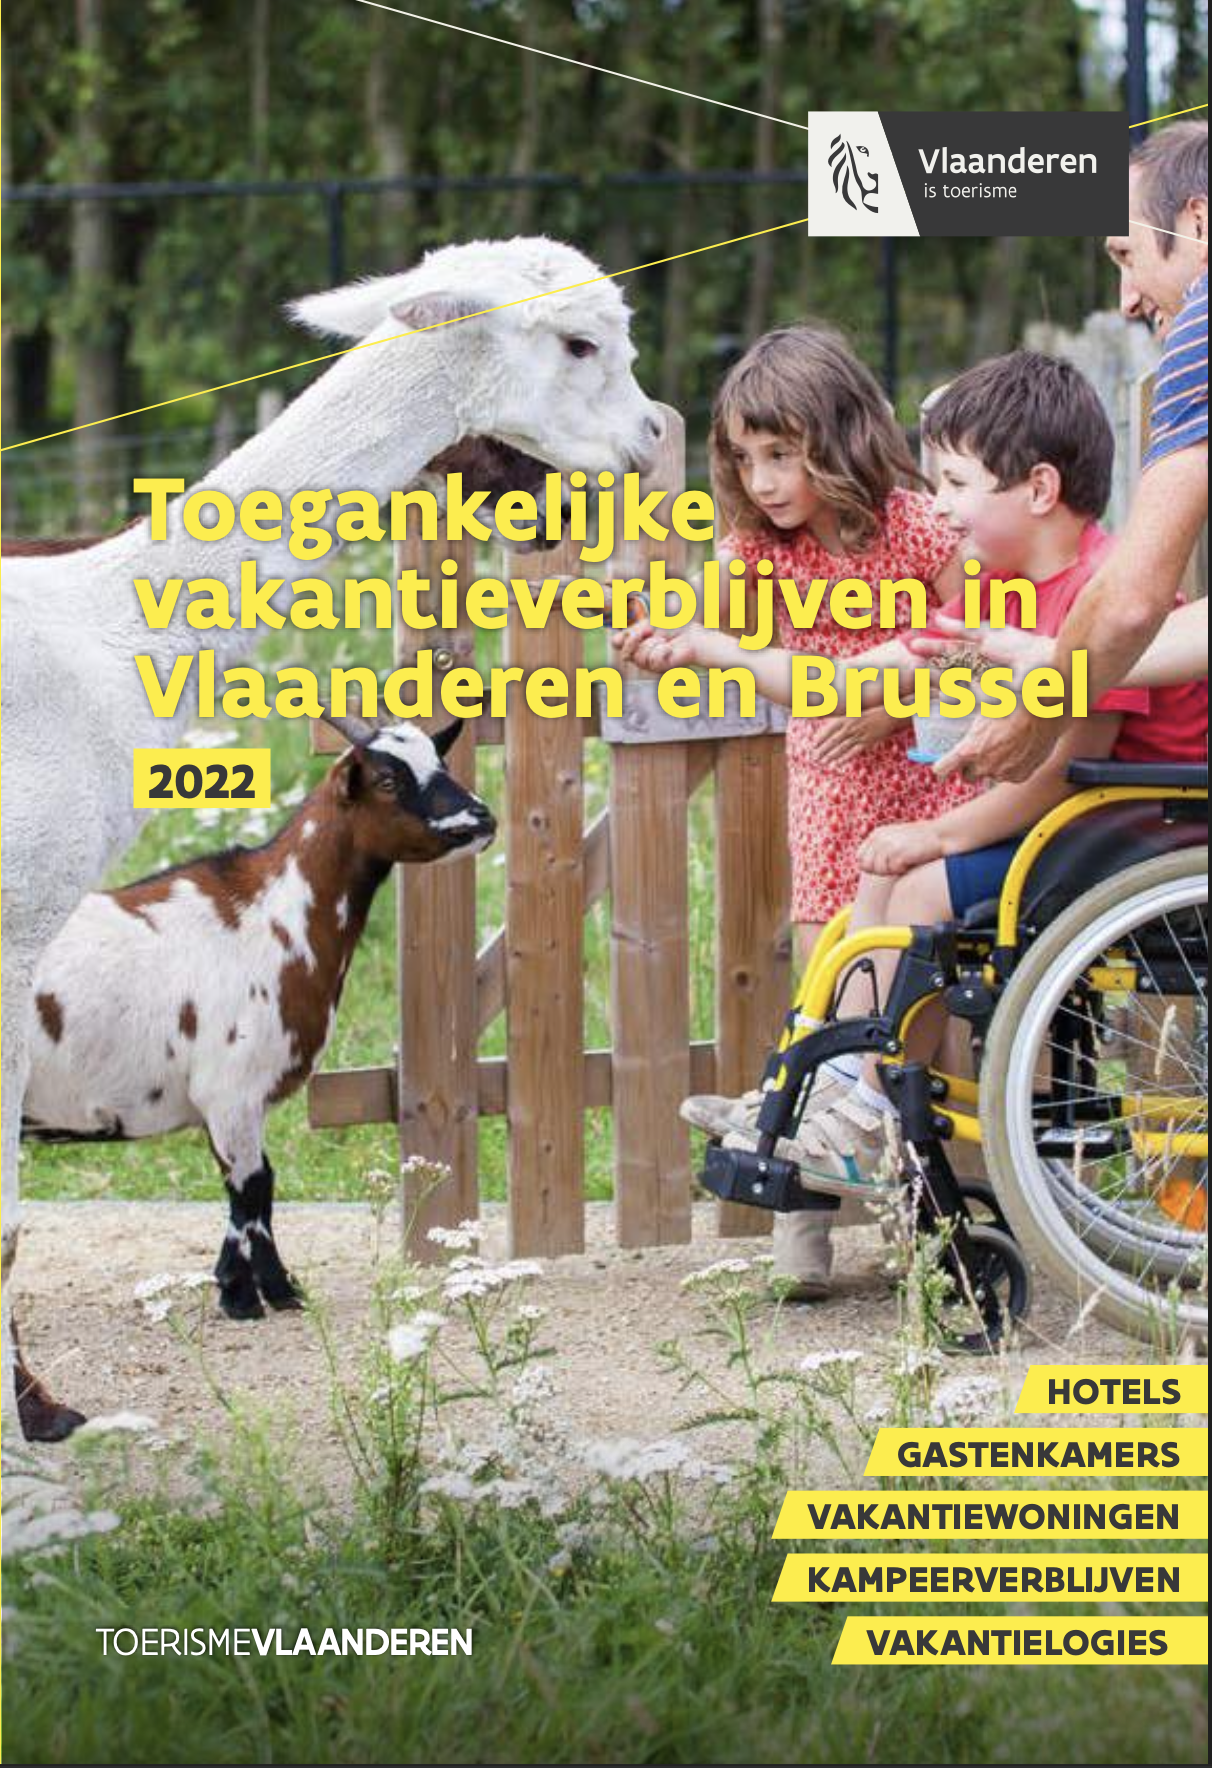 Toegankelijke vakantieverblijven In Vlaanderen en Brussel 2022 (hotels ea)